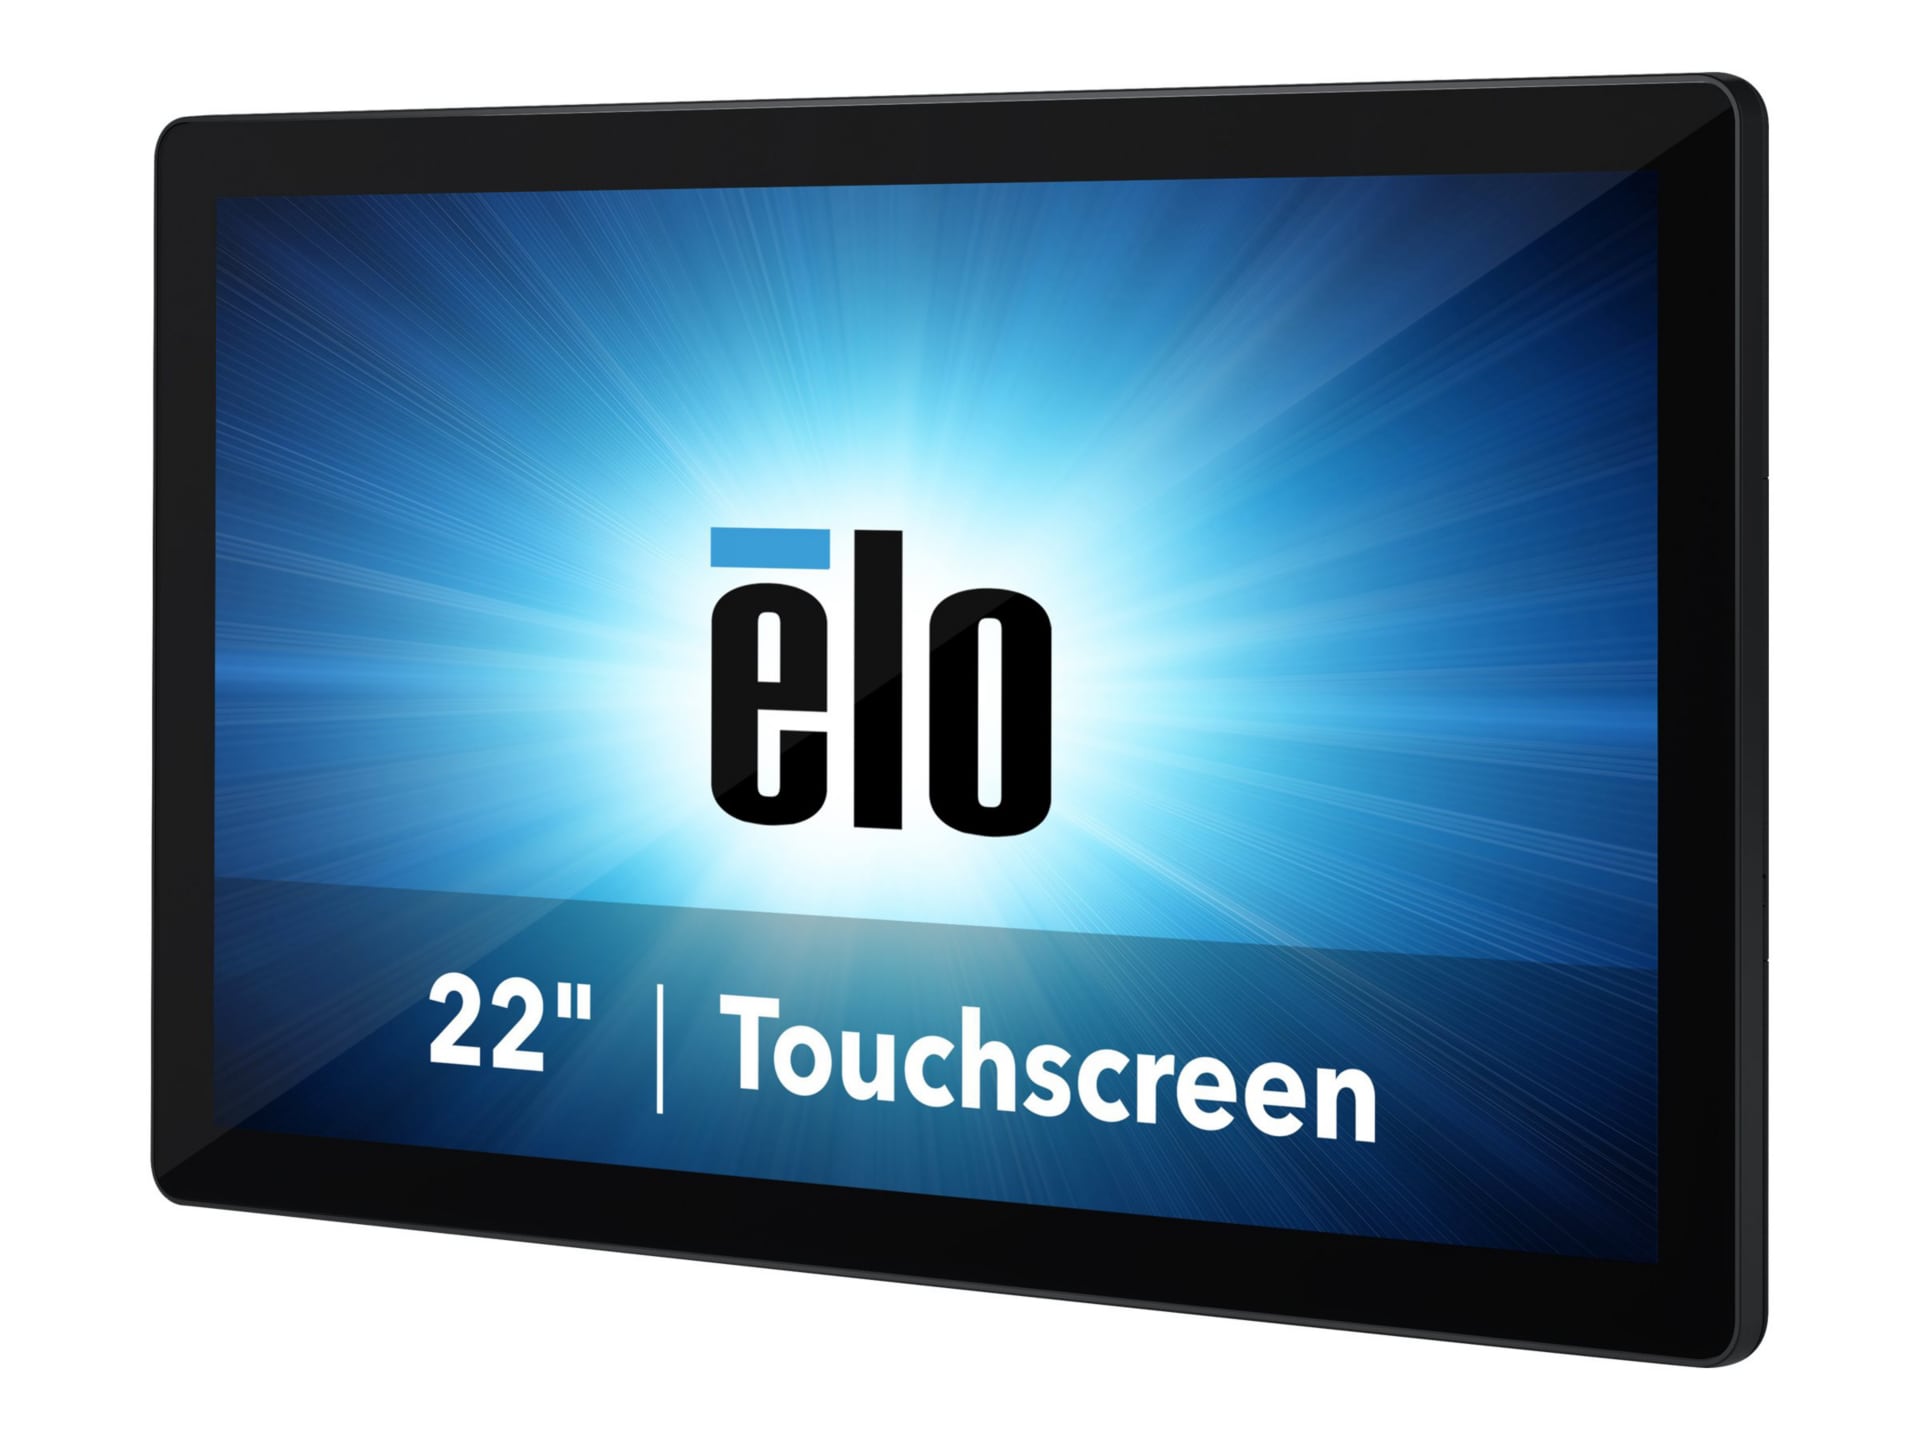 Elo I-Series 2.0 - all-in-one - Core i3 8100T 3.1 GHz - 8 GB - SSD 128 GB -